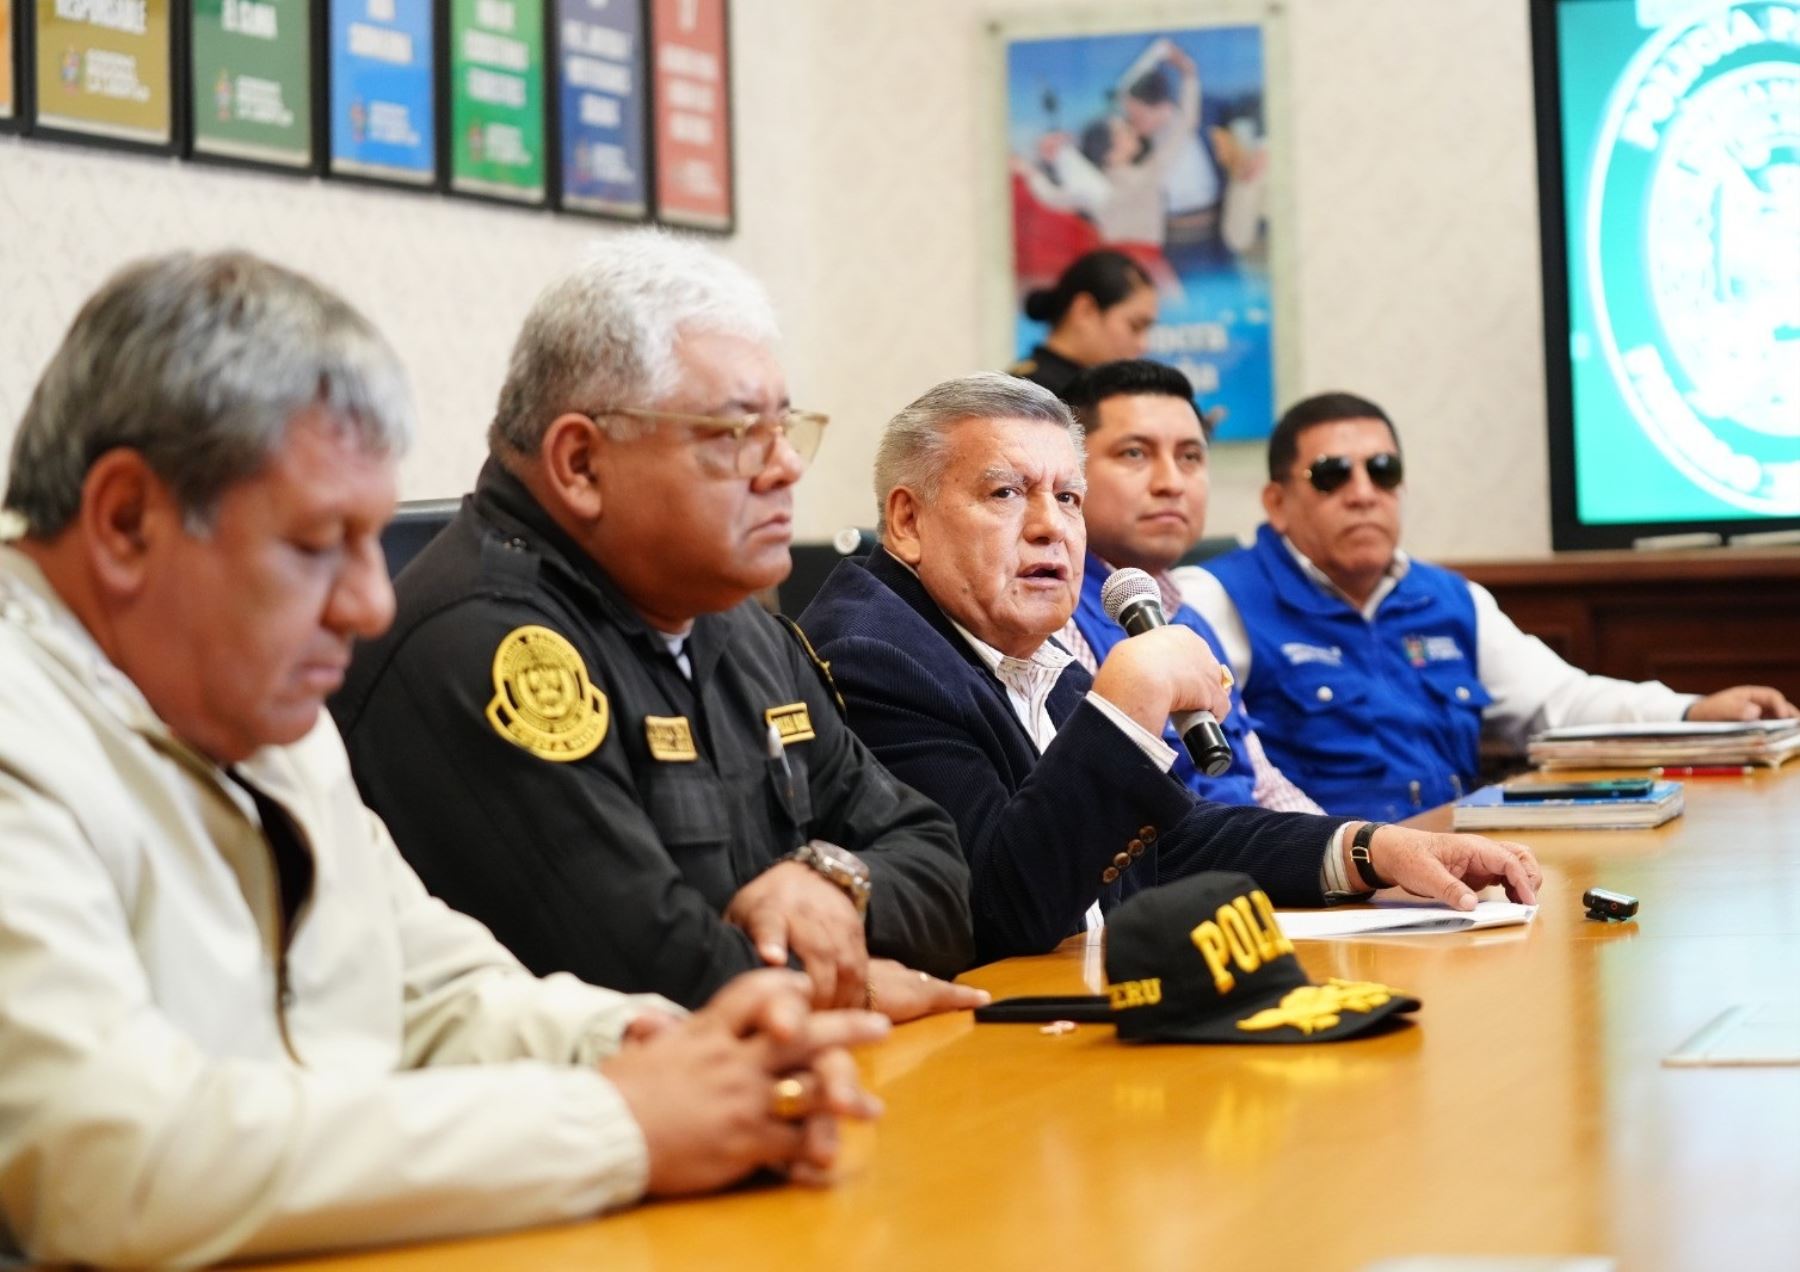 El gobernador regional de La Libertad, César Acuña, anunció que solicitará al Ejecutivo ampliar el estado de emergencia en Trujillo ante la próxima cita del Foro APEC que se celebrará en agosto en la capital de La Libertad.